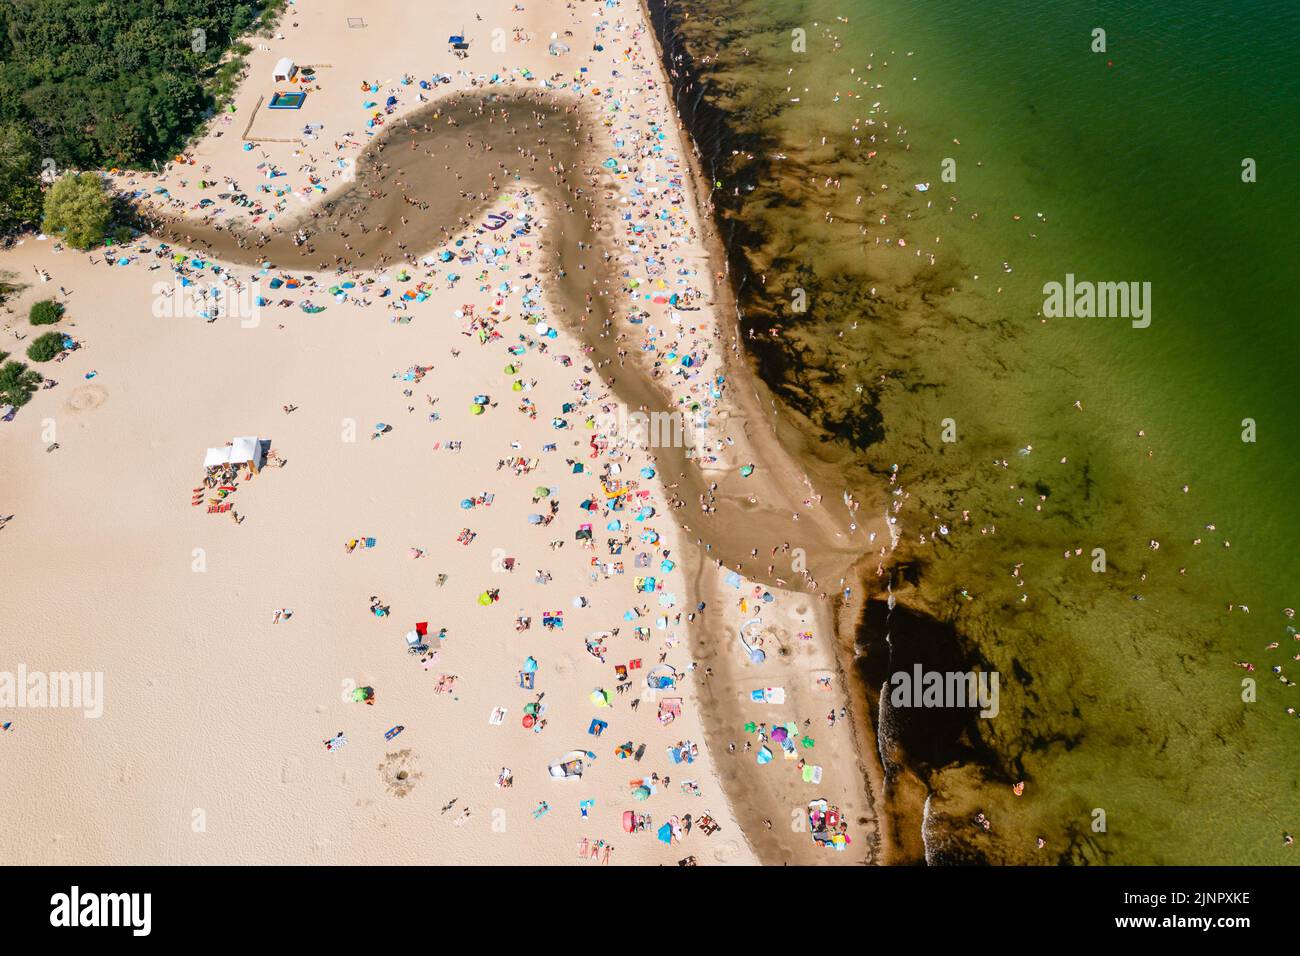 La costa del Báltico, gente que se bañan en el mar y en la desembocadura del río Oliwski al mar durante el caluroso fin de semana de verano Foto de stock